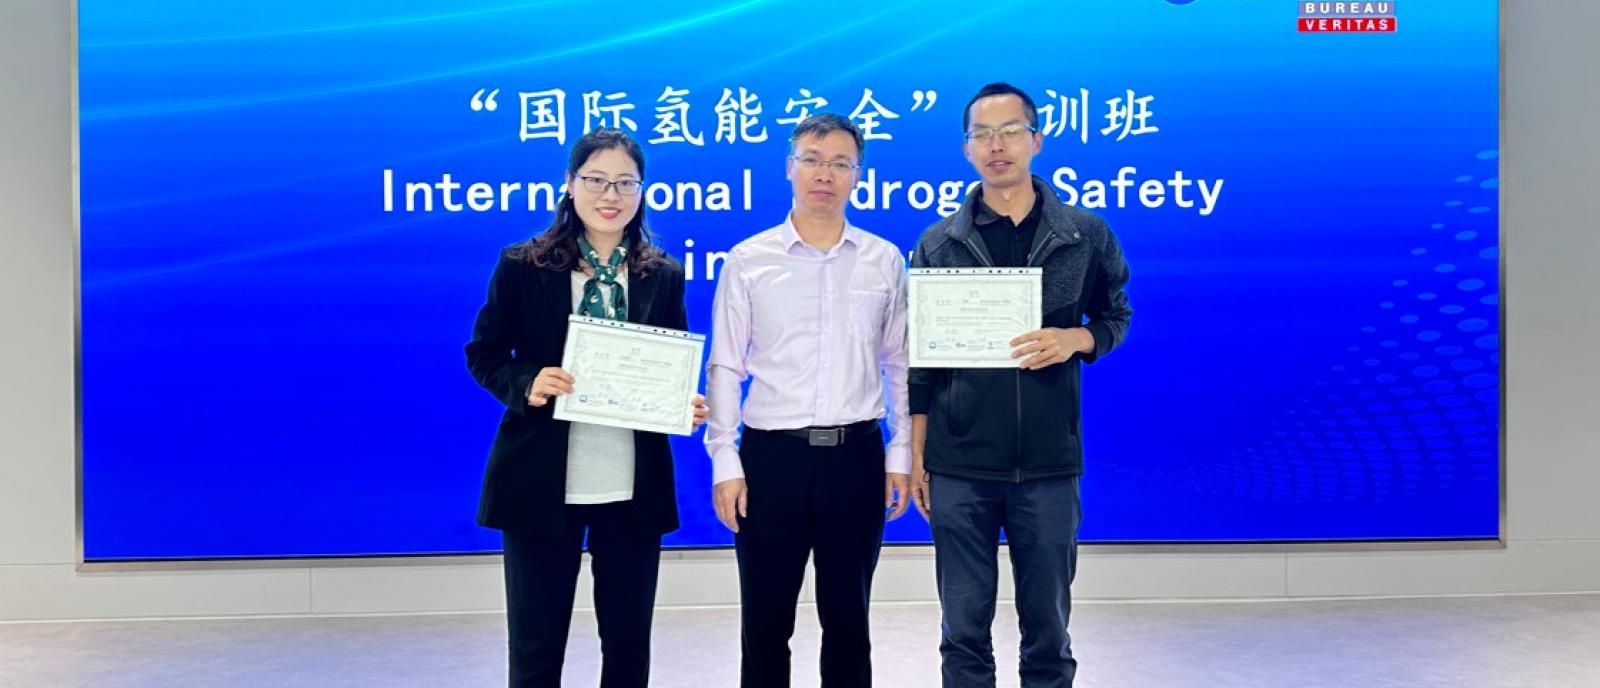 中国氢能联盟 | 标准化研究院 | 必维集团三方合力打造《国际氢能安全培训》